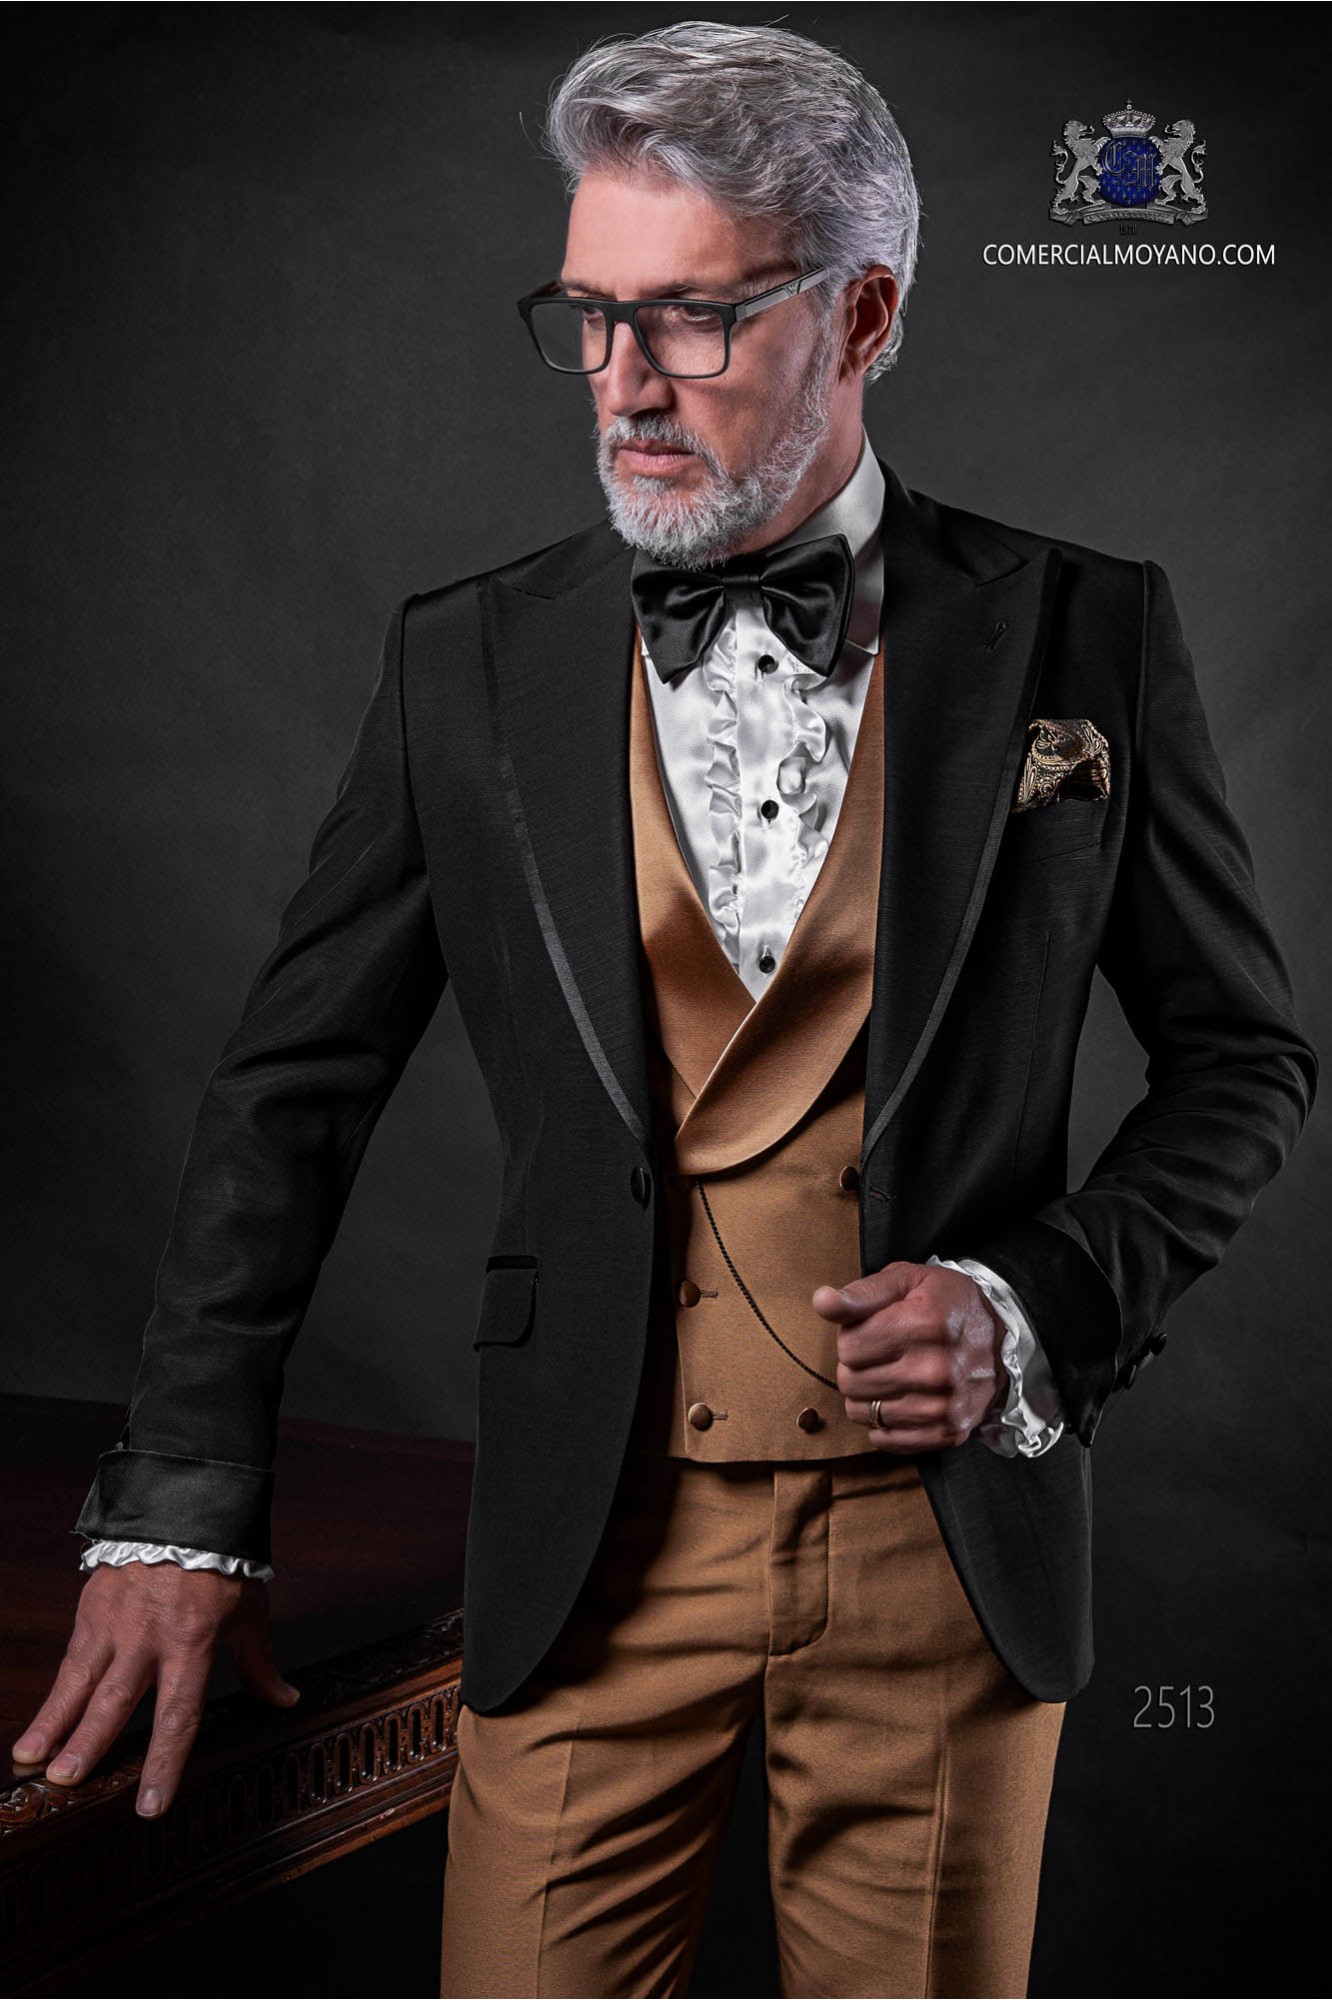 Traje de novio negro coordinado con pantalón y chaleco dorado modelo: 2513 Mario Moyano colección Fashion